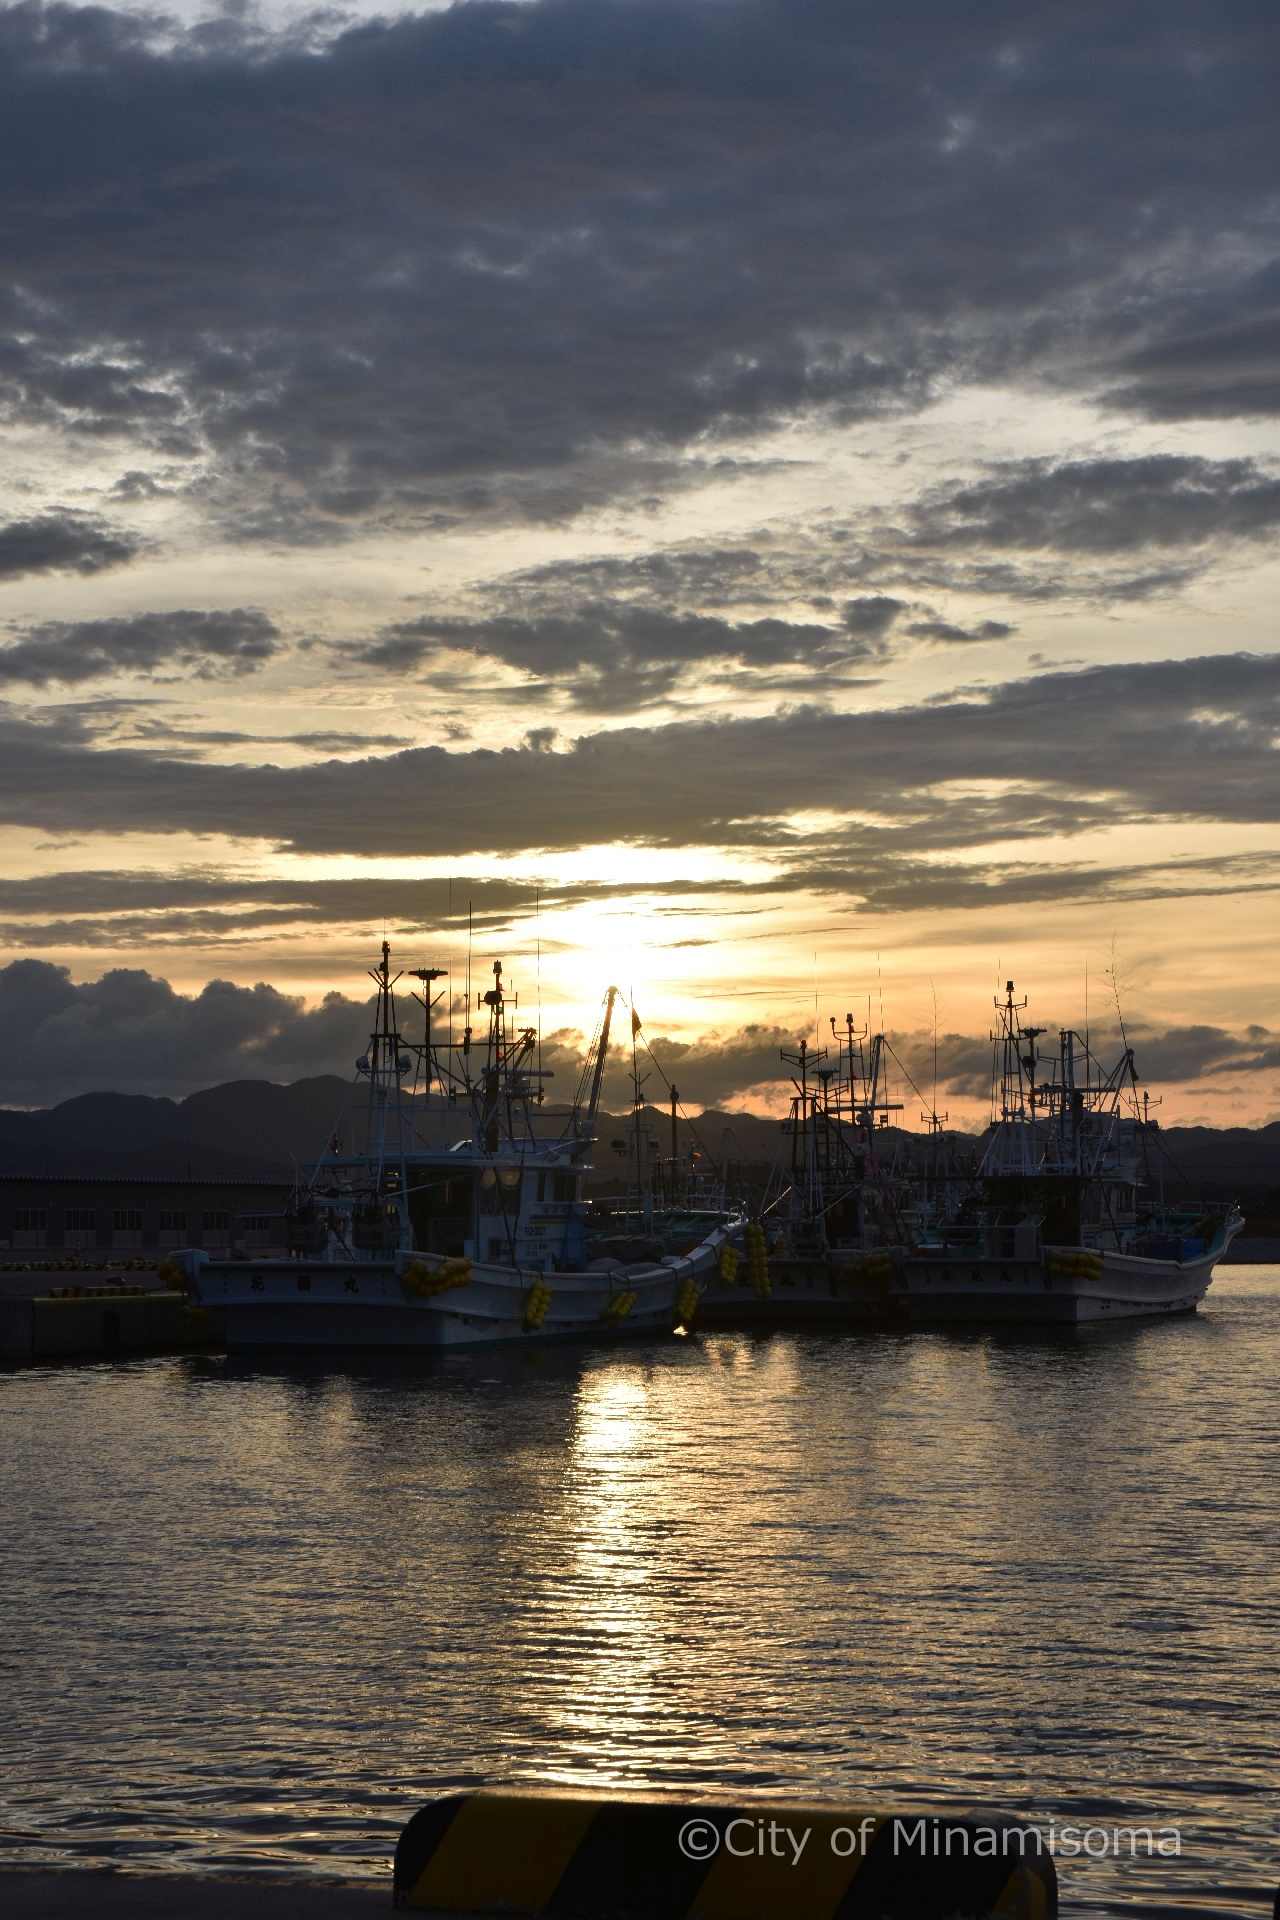 夕方の真野川漁港の様子。灰色の雲の隙間からオレンジ色の太陽が姿を見せ、係留されている漁船のシルエットが浮かび上がっている。